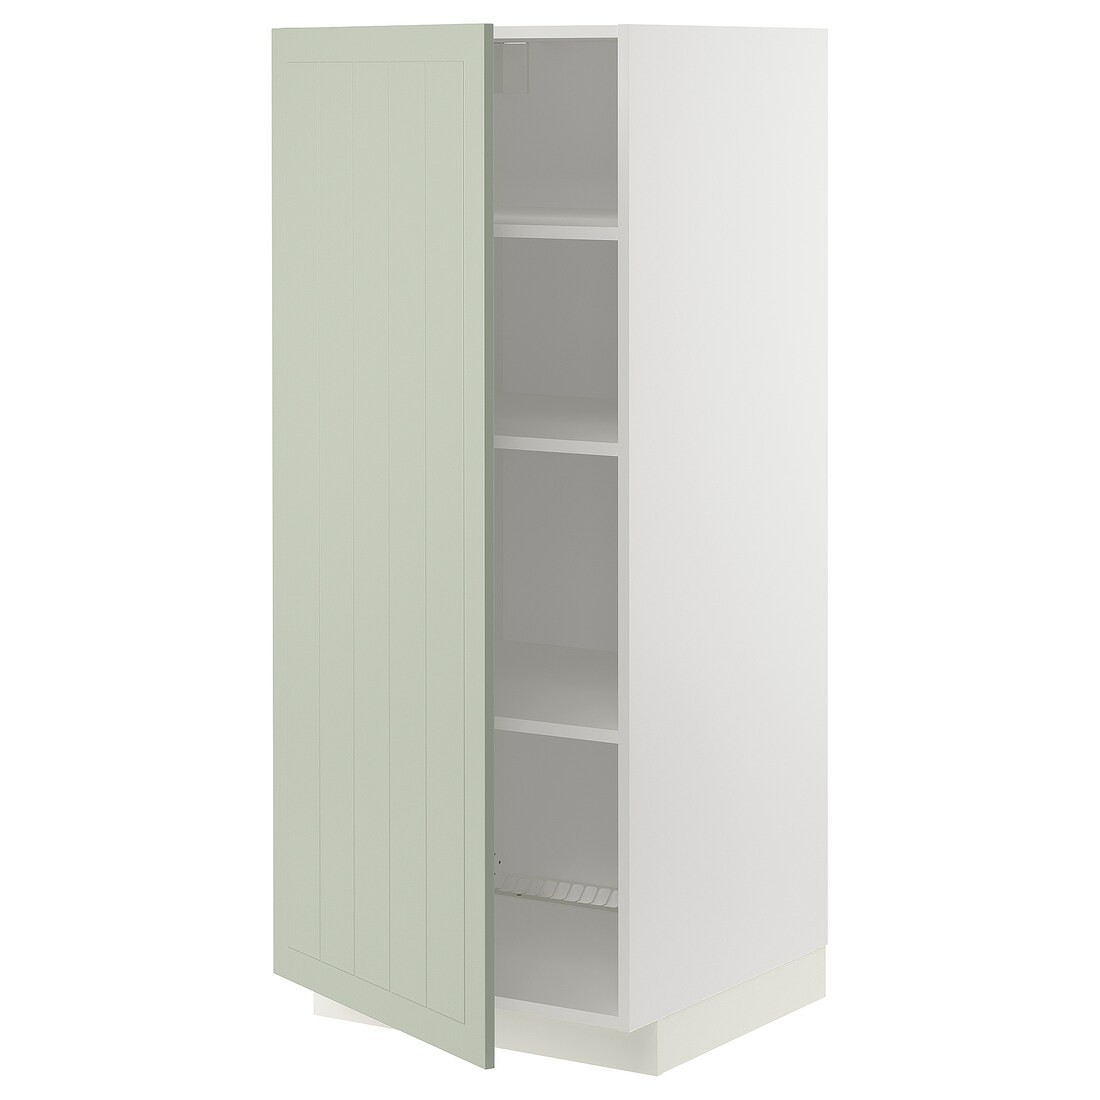 METOD МЕТОД Высокий шкаф с полками, белый / Stensund светло-зеленый, 60x60x140 см